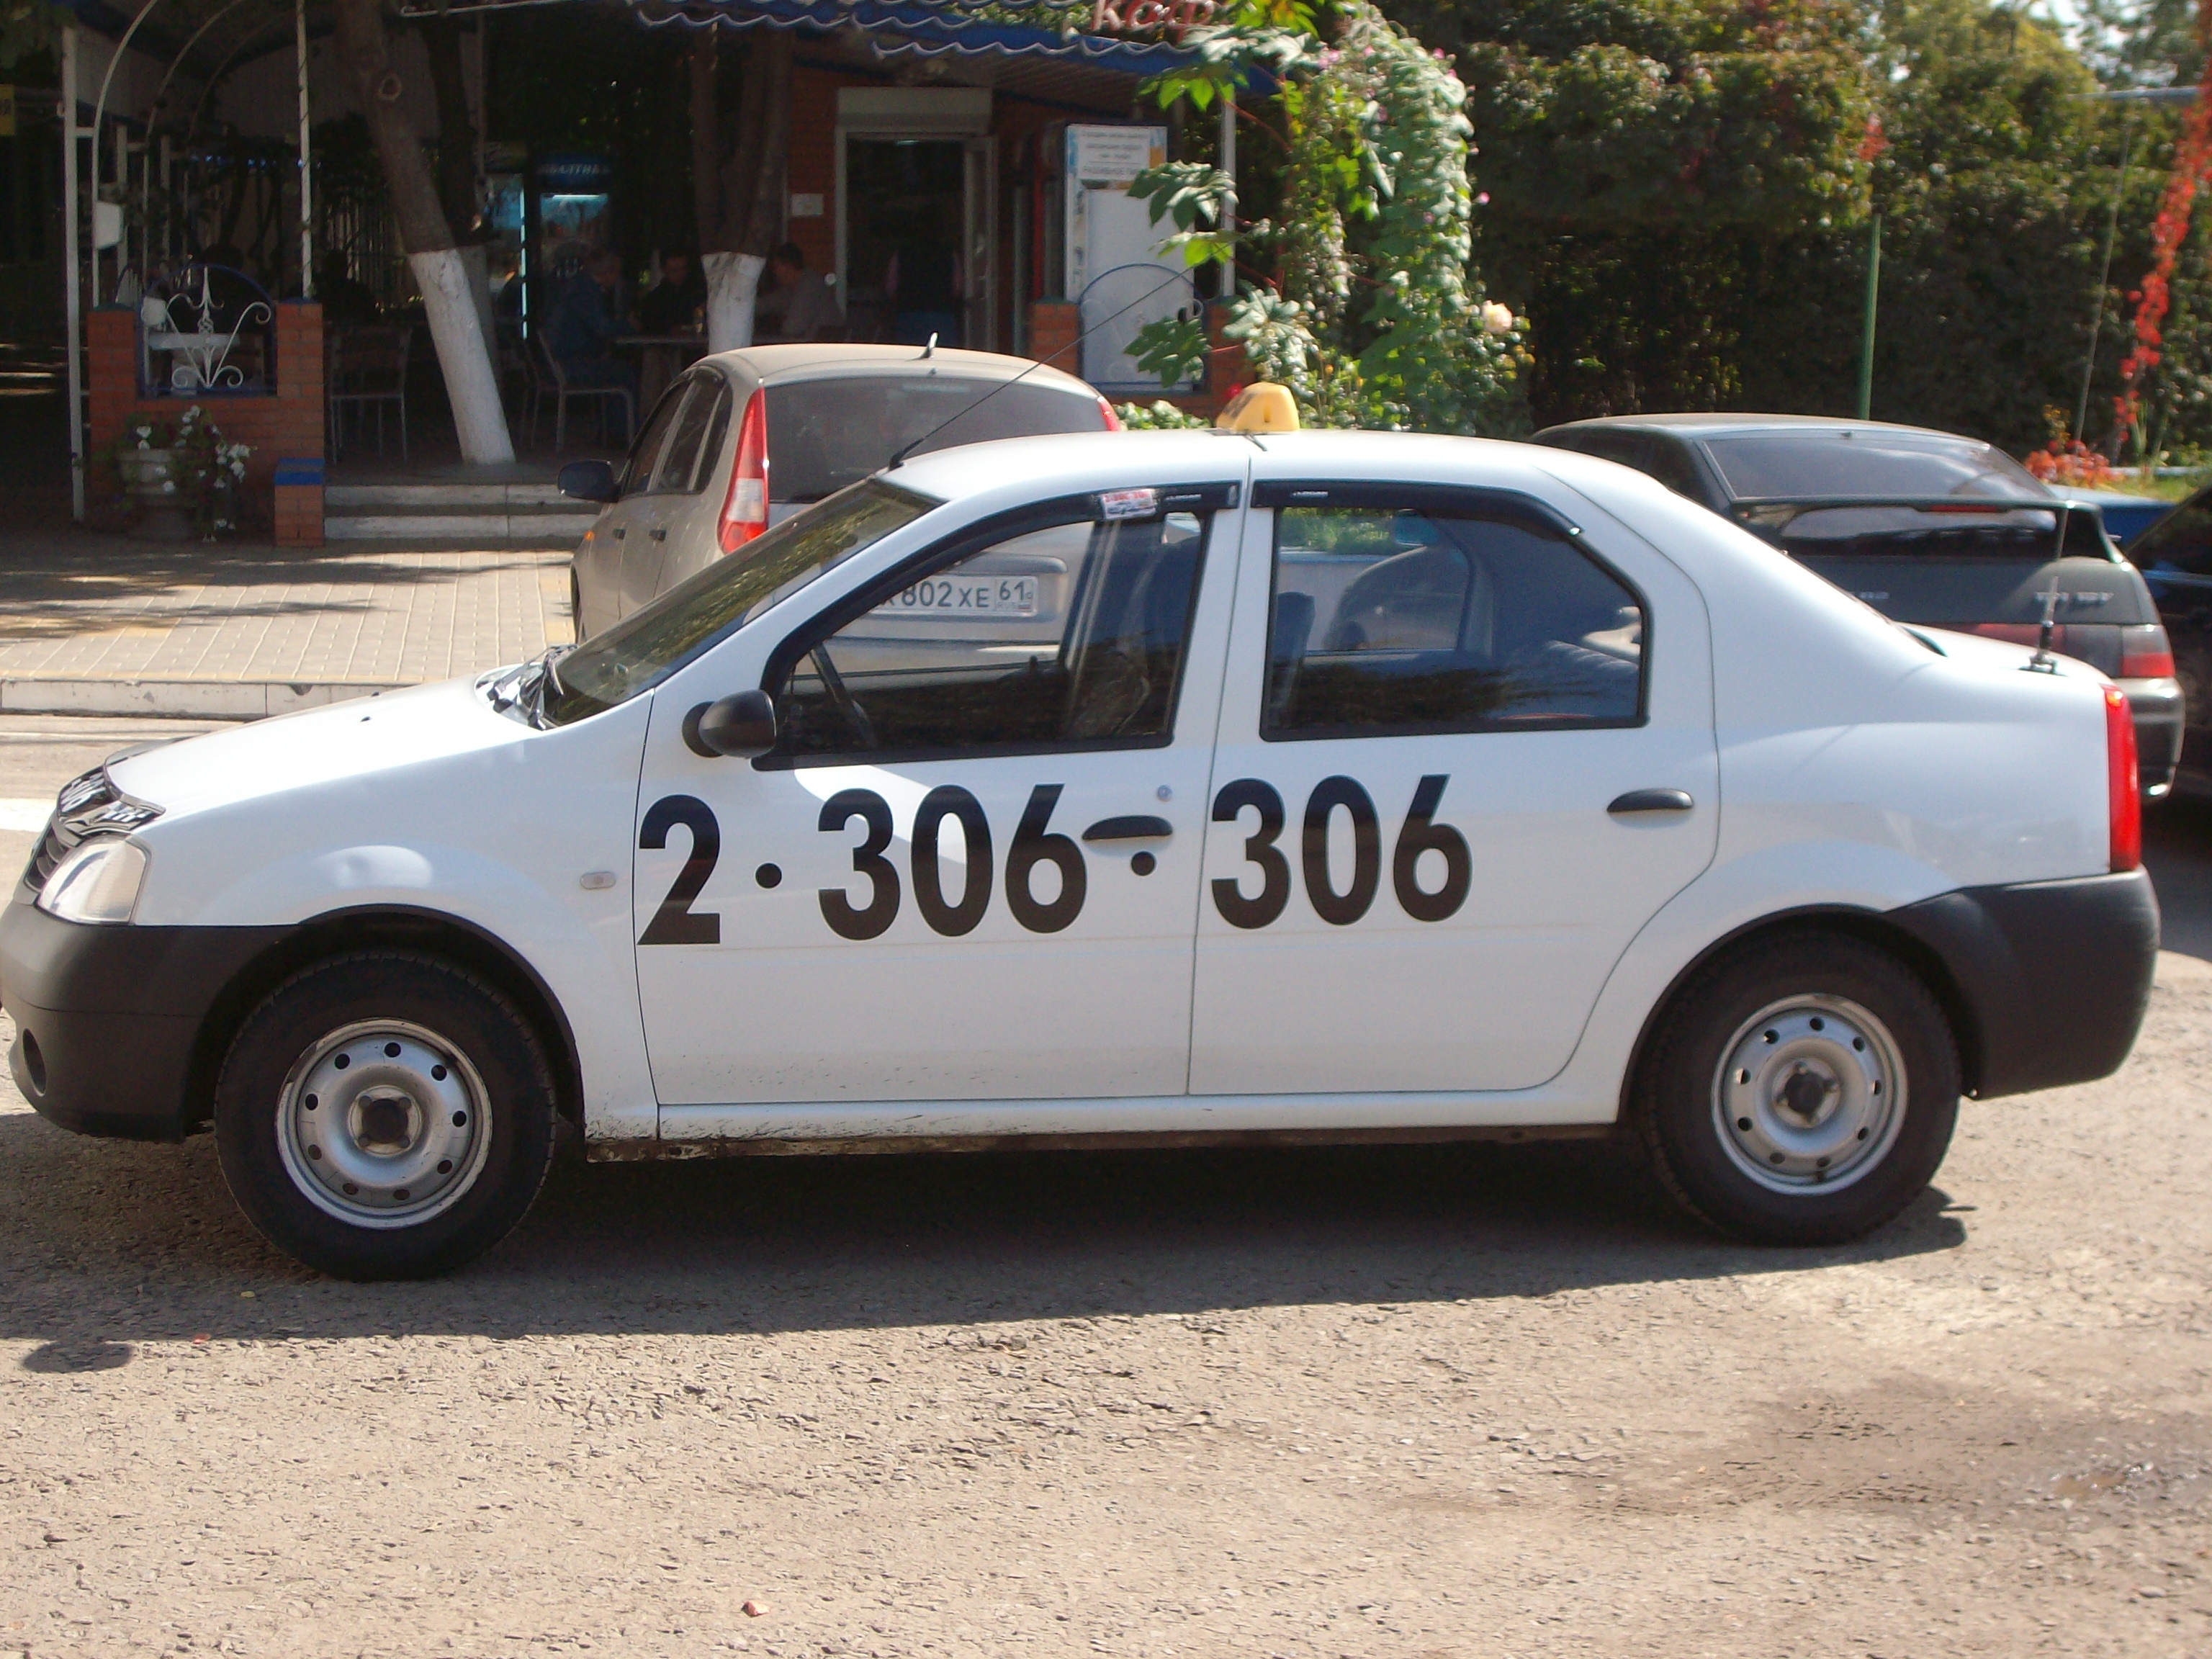 Номер телефона такси в ростове на дону. Рено Логан такси 306 306. Такси 306-306 Ростов-на-Дону. Такси 2306306. Белое такси.